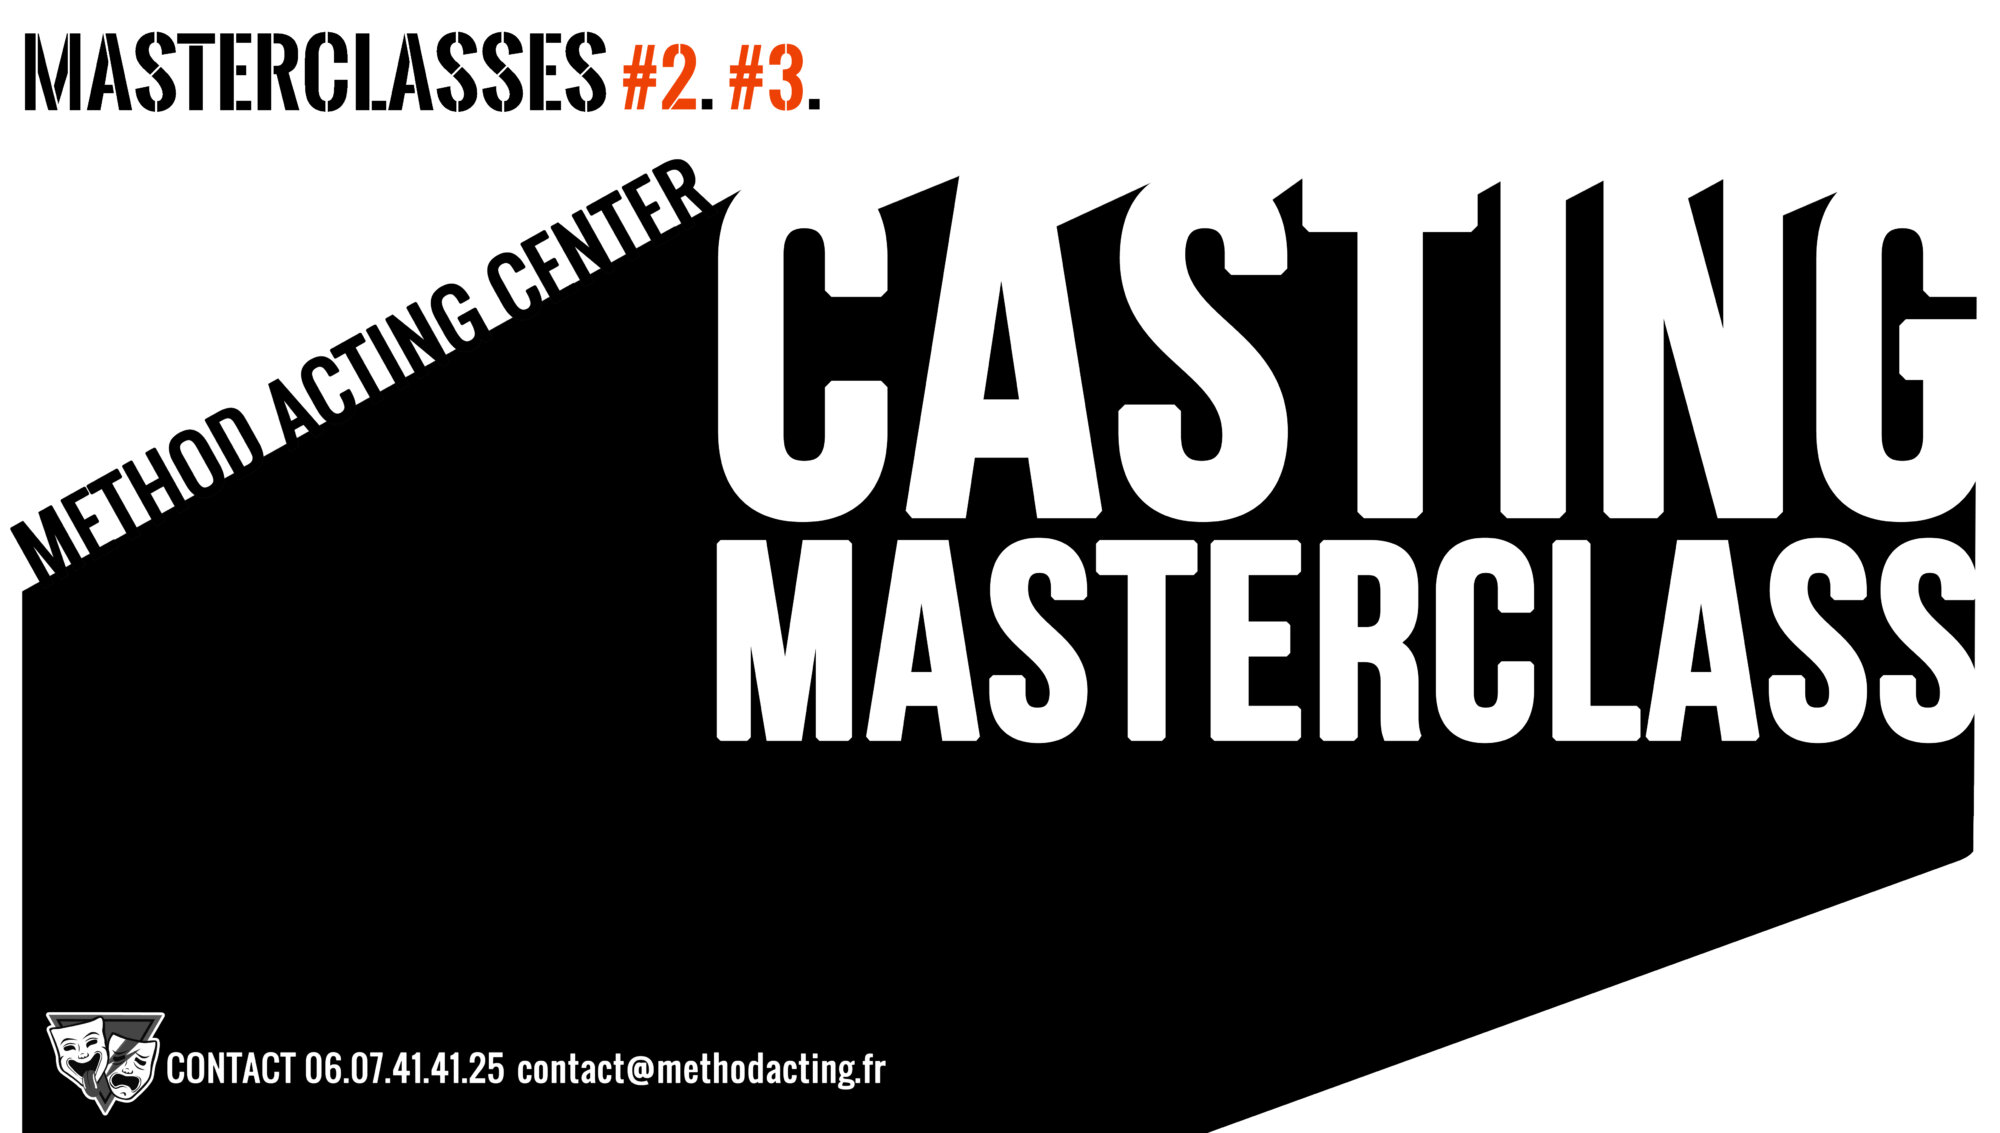 Masterclasses Weekend Castings #2 & #3